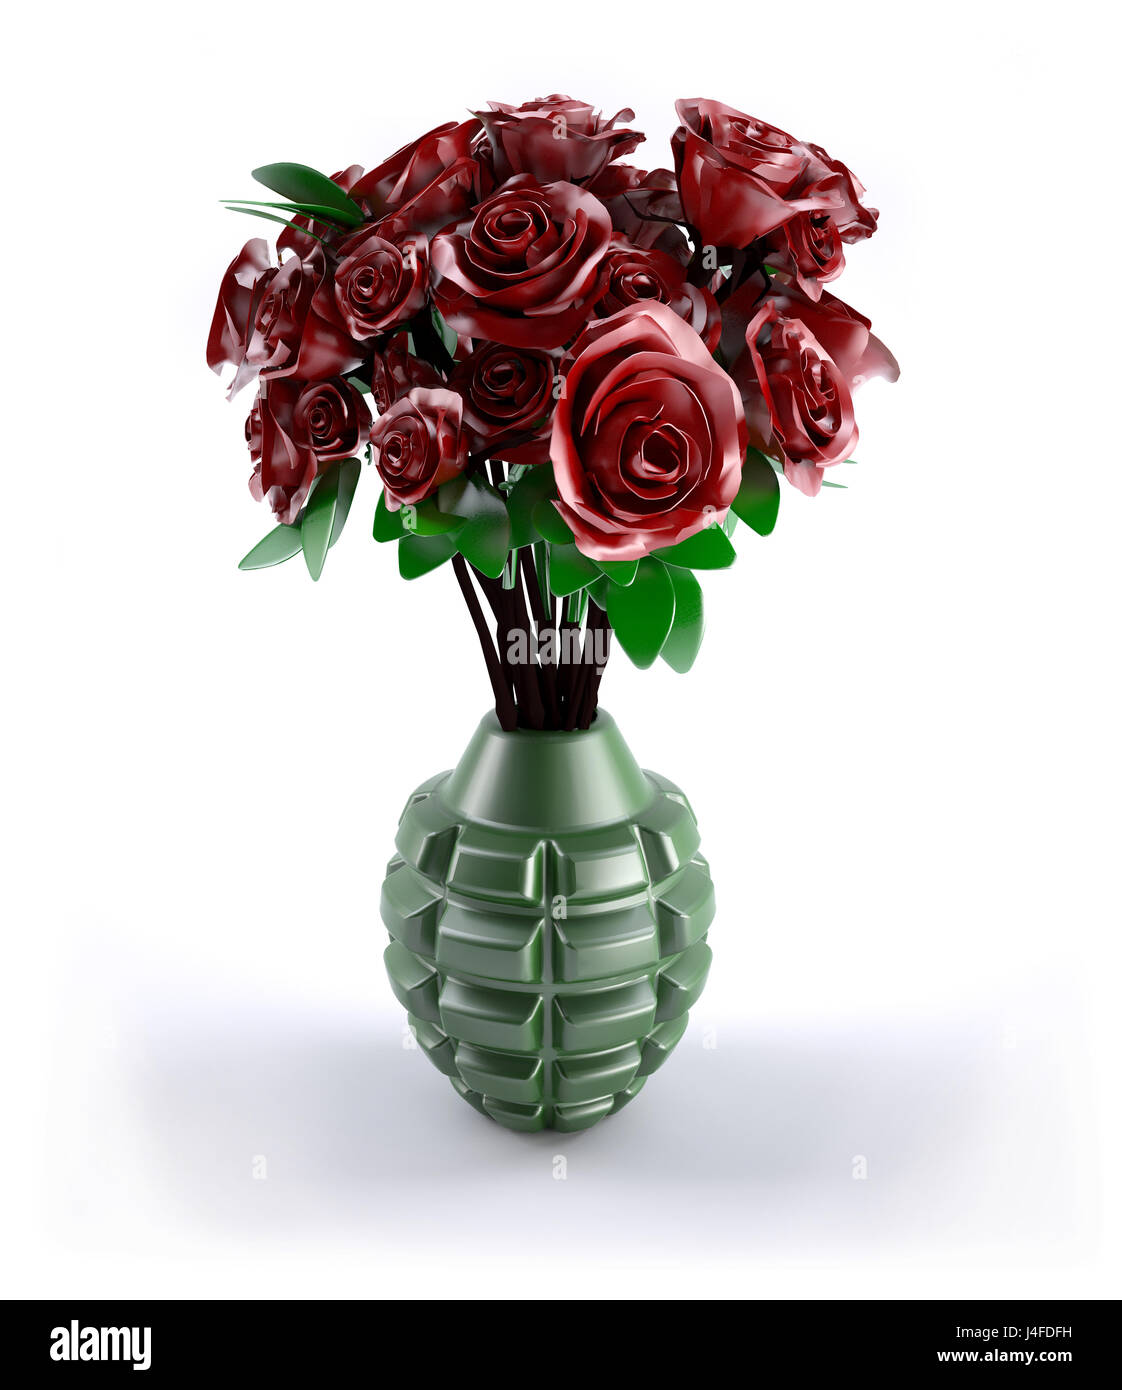 Handgranate mit vielen roten Rosen innen, 3d illustration Stockfotografie -  Alamy